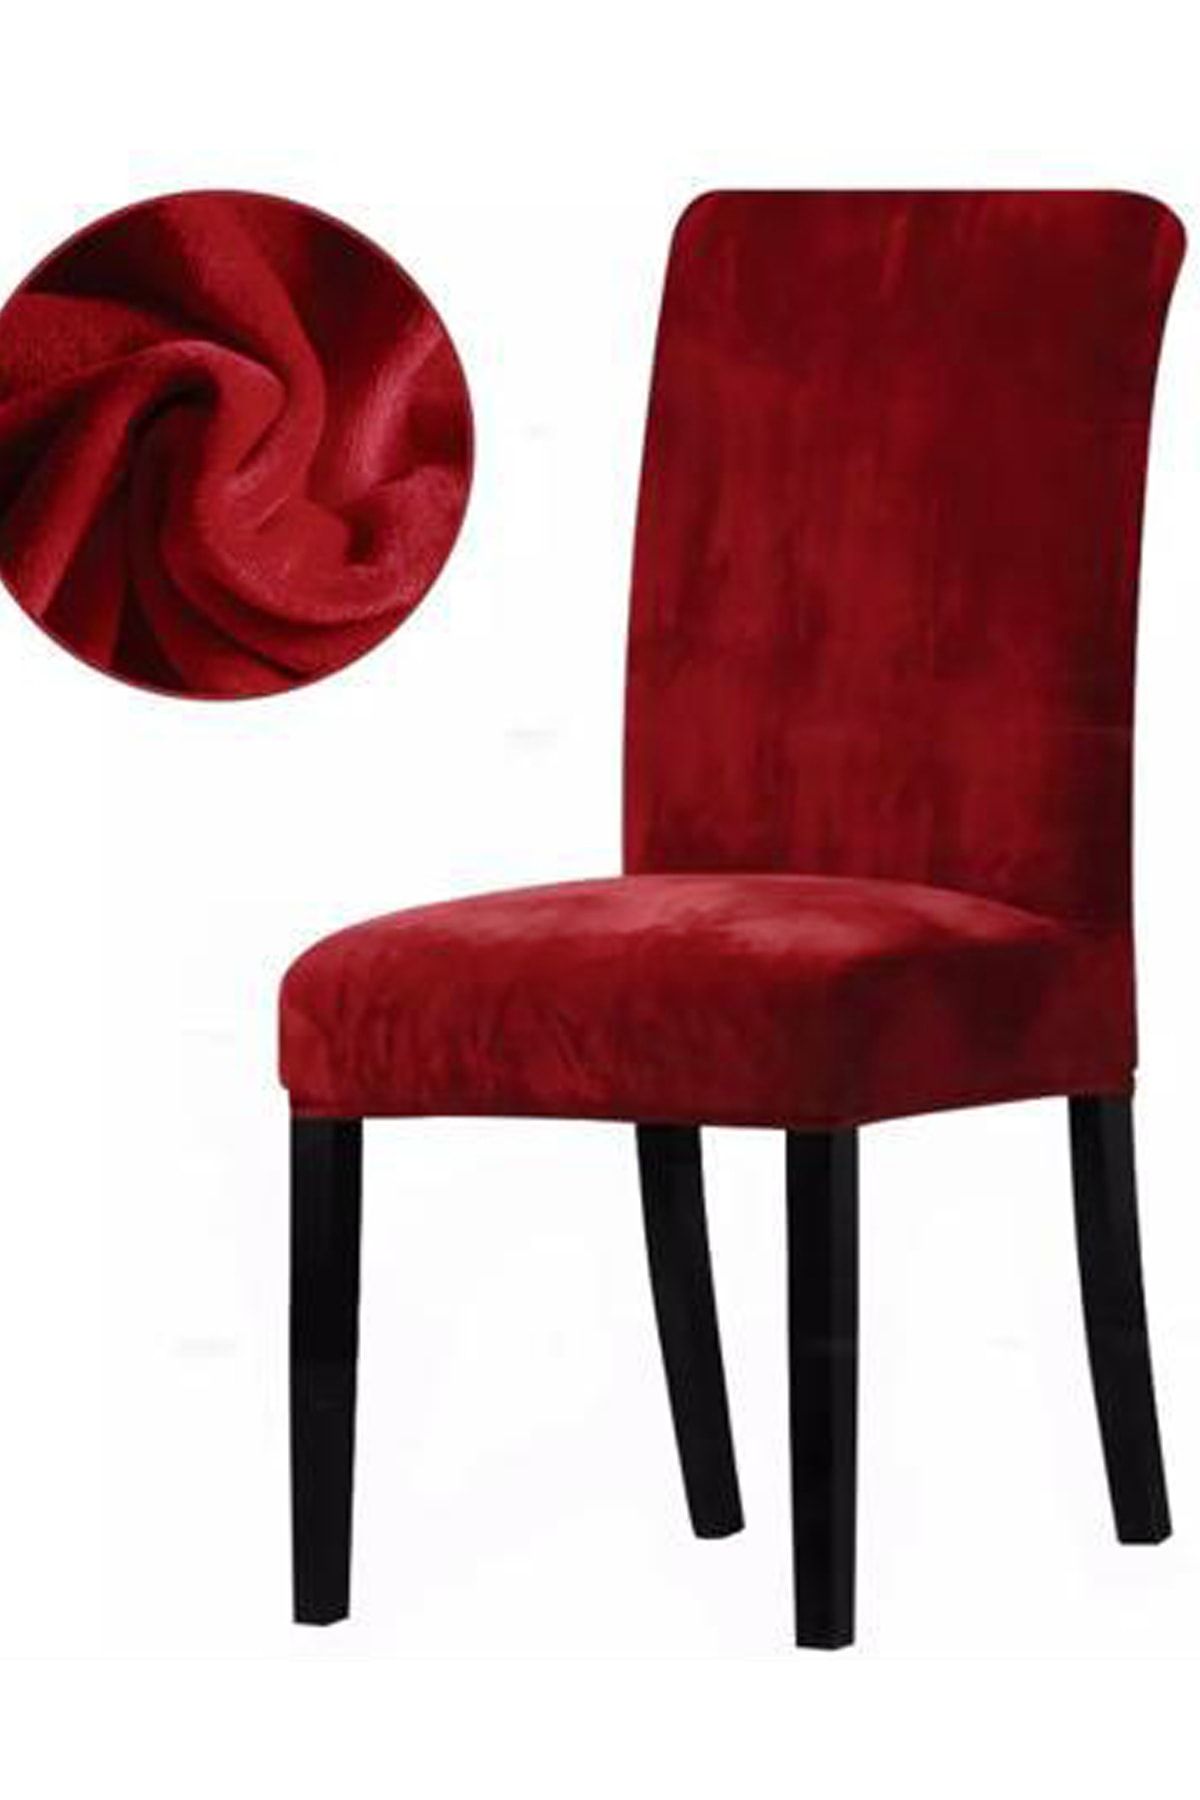 Fushia Likralı Kadife Sandalye Örtüsü Yıkanabilir Spandex Sandalye Kılıfı Kırmızı